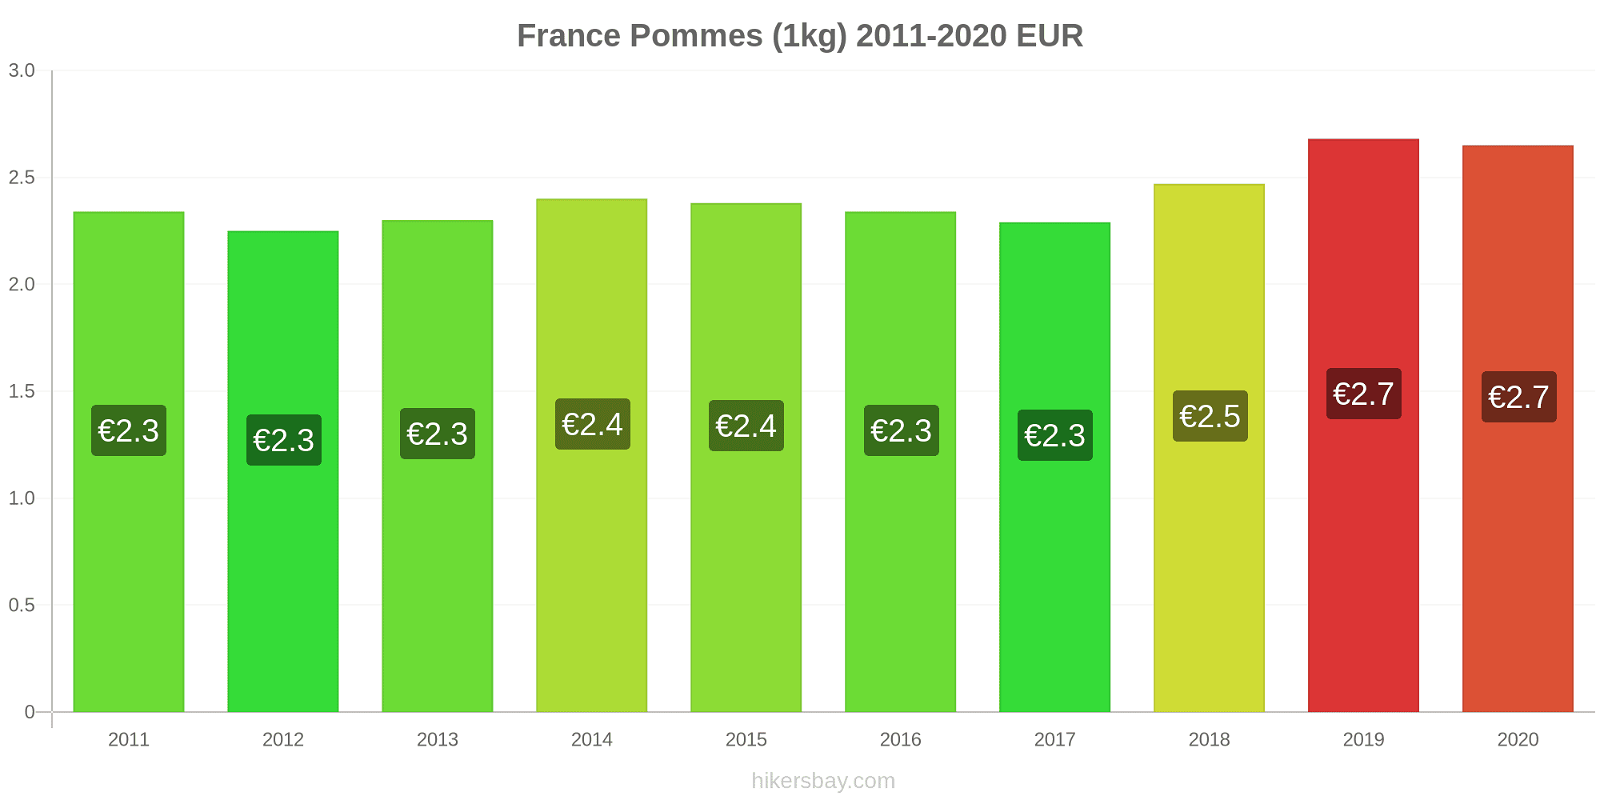 France changements de prix Pommes (1kg) hikersbay.com